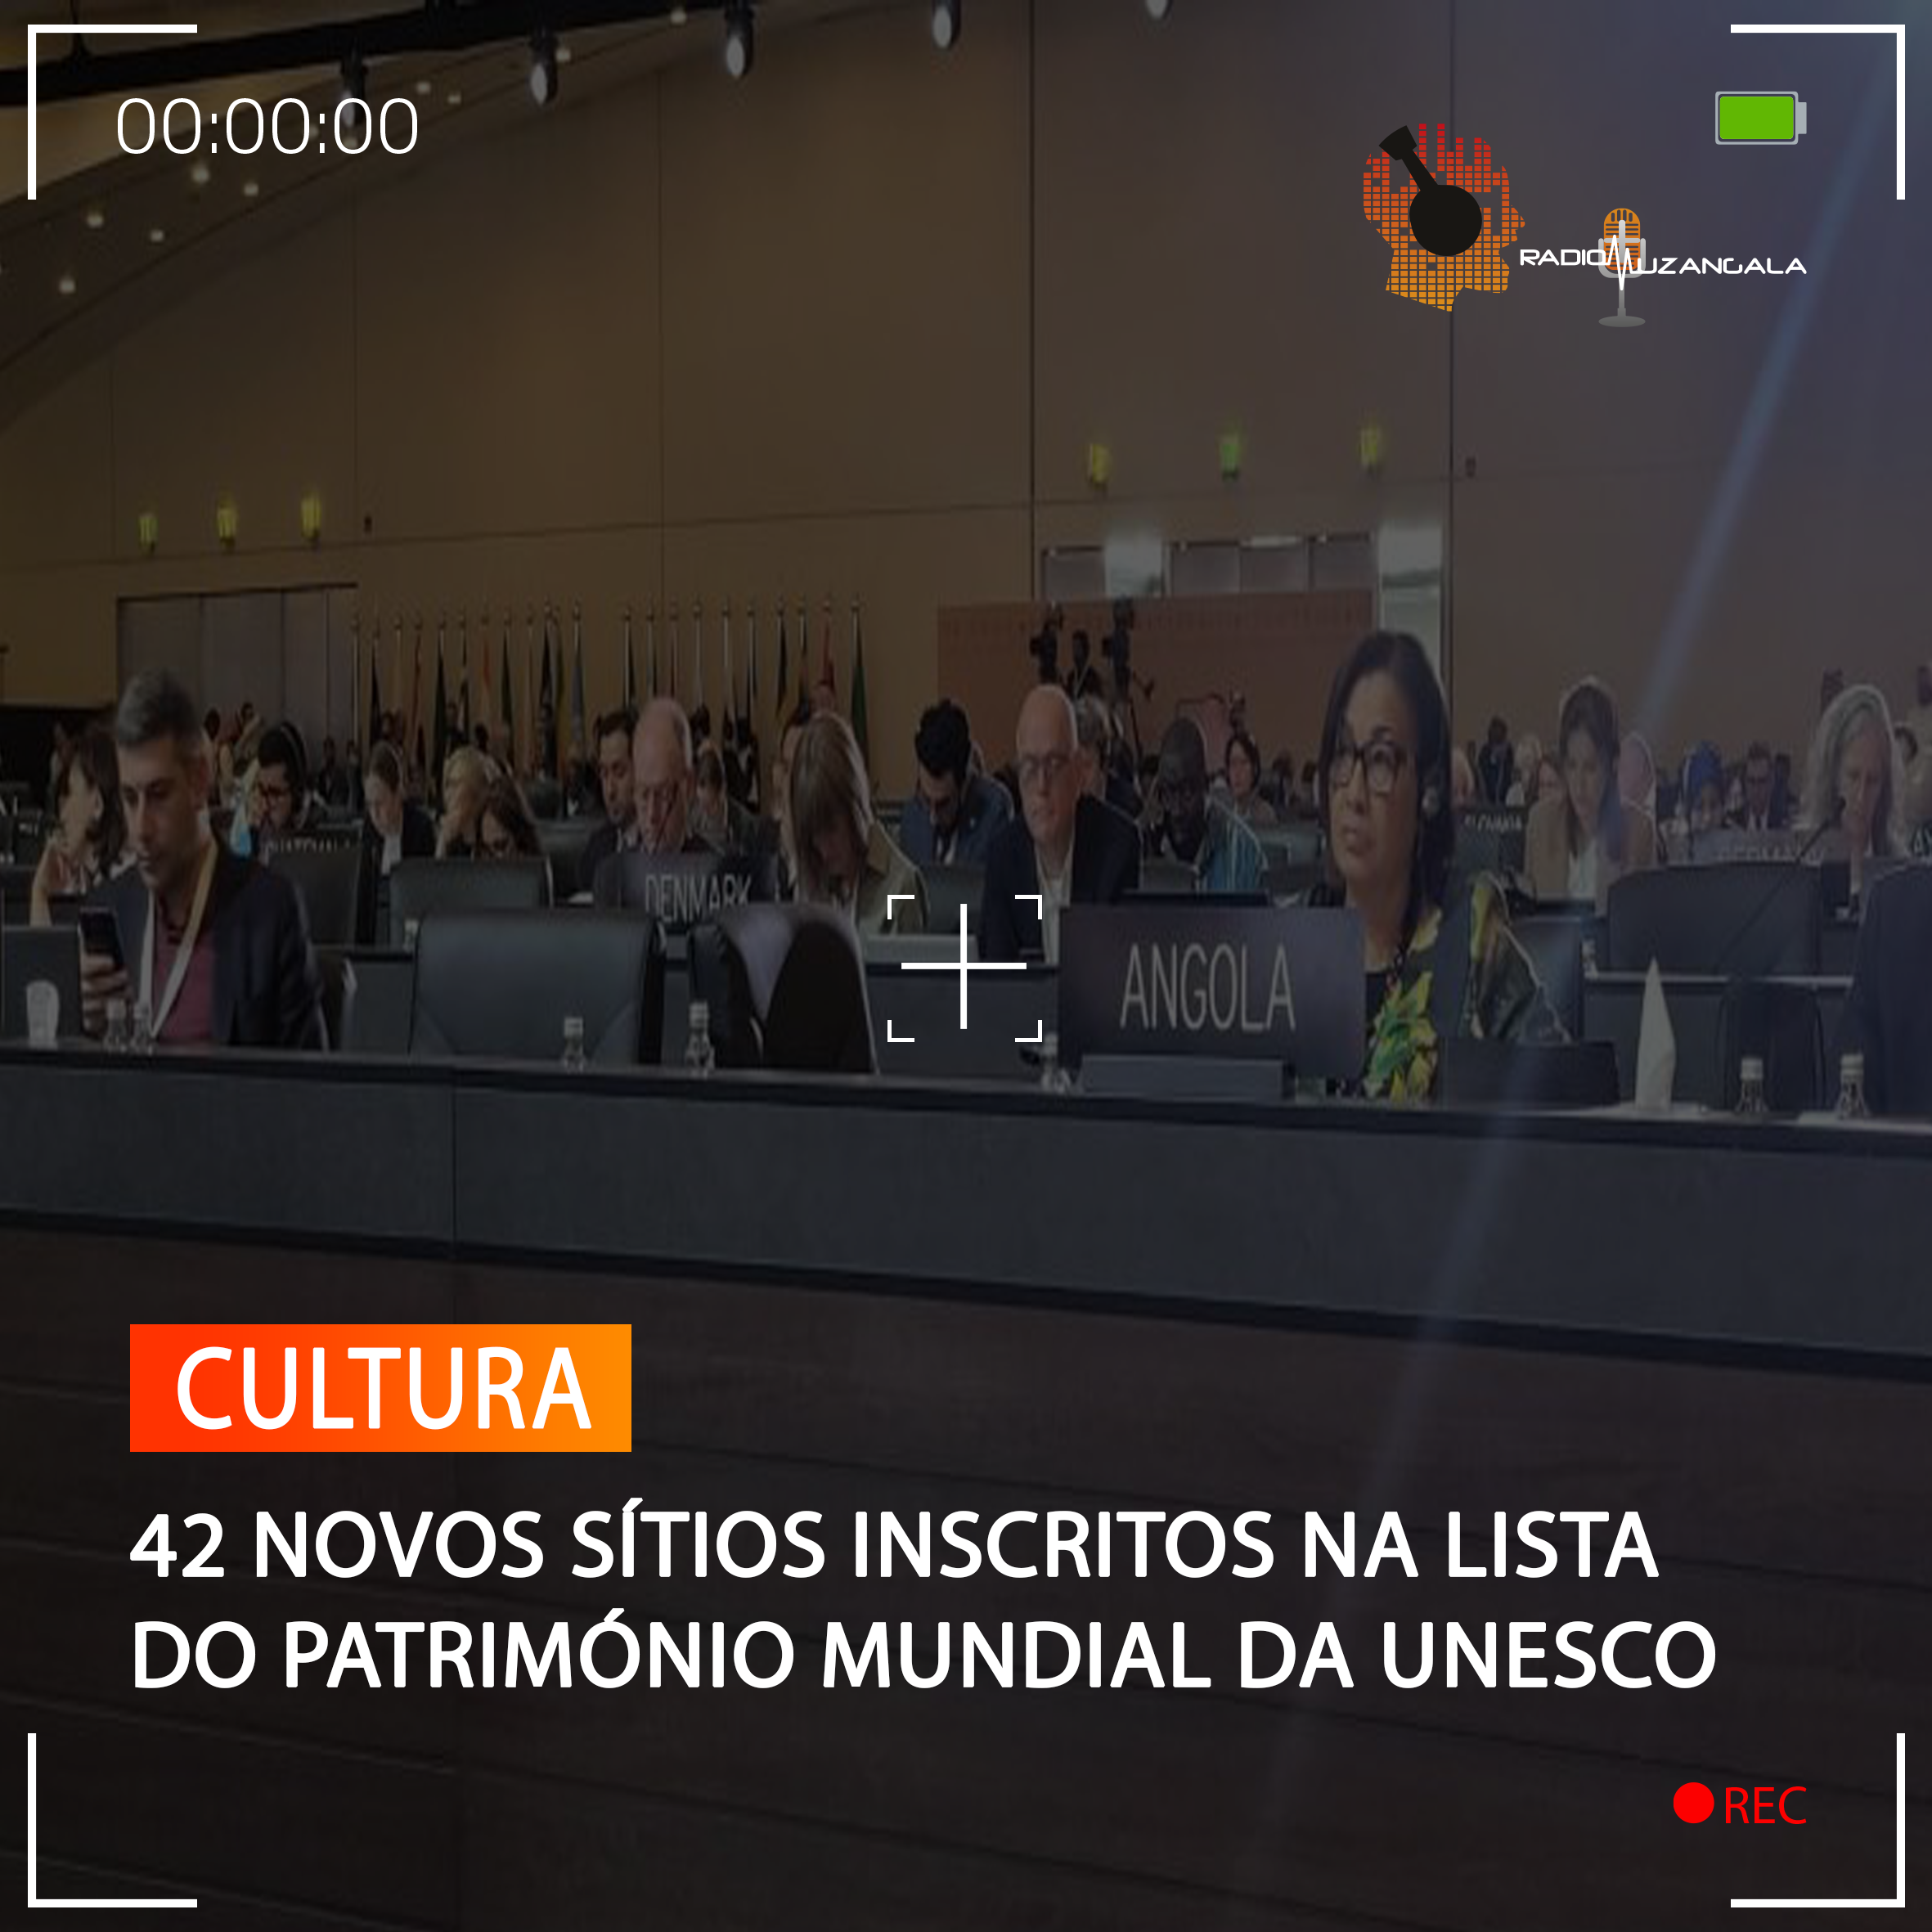  42 NOVOS SÍTIOS INSCRITOS NA LISTA DO PATRIMÓNIO MUNDIAL DA UNESCO